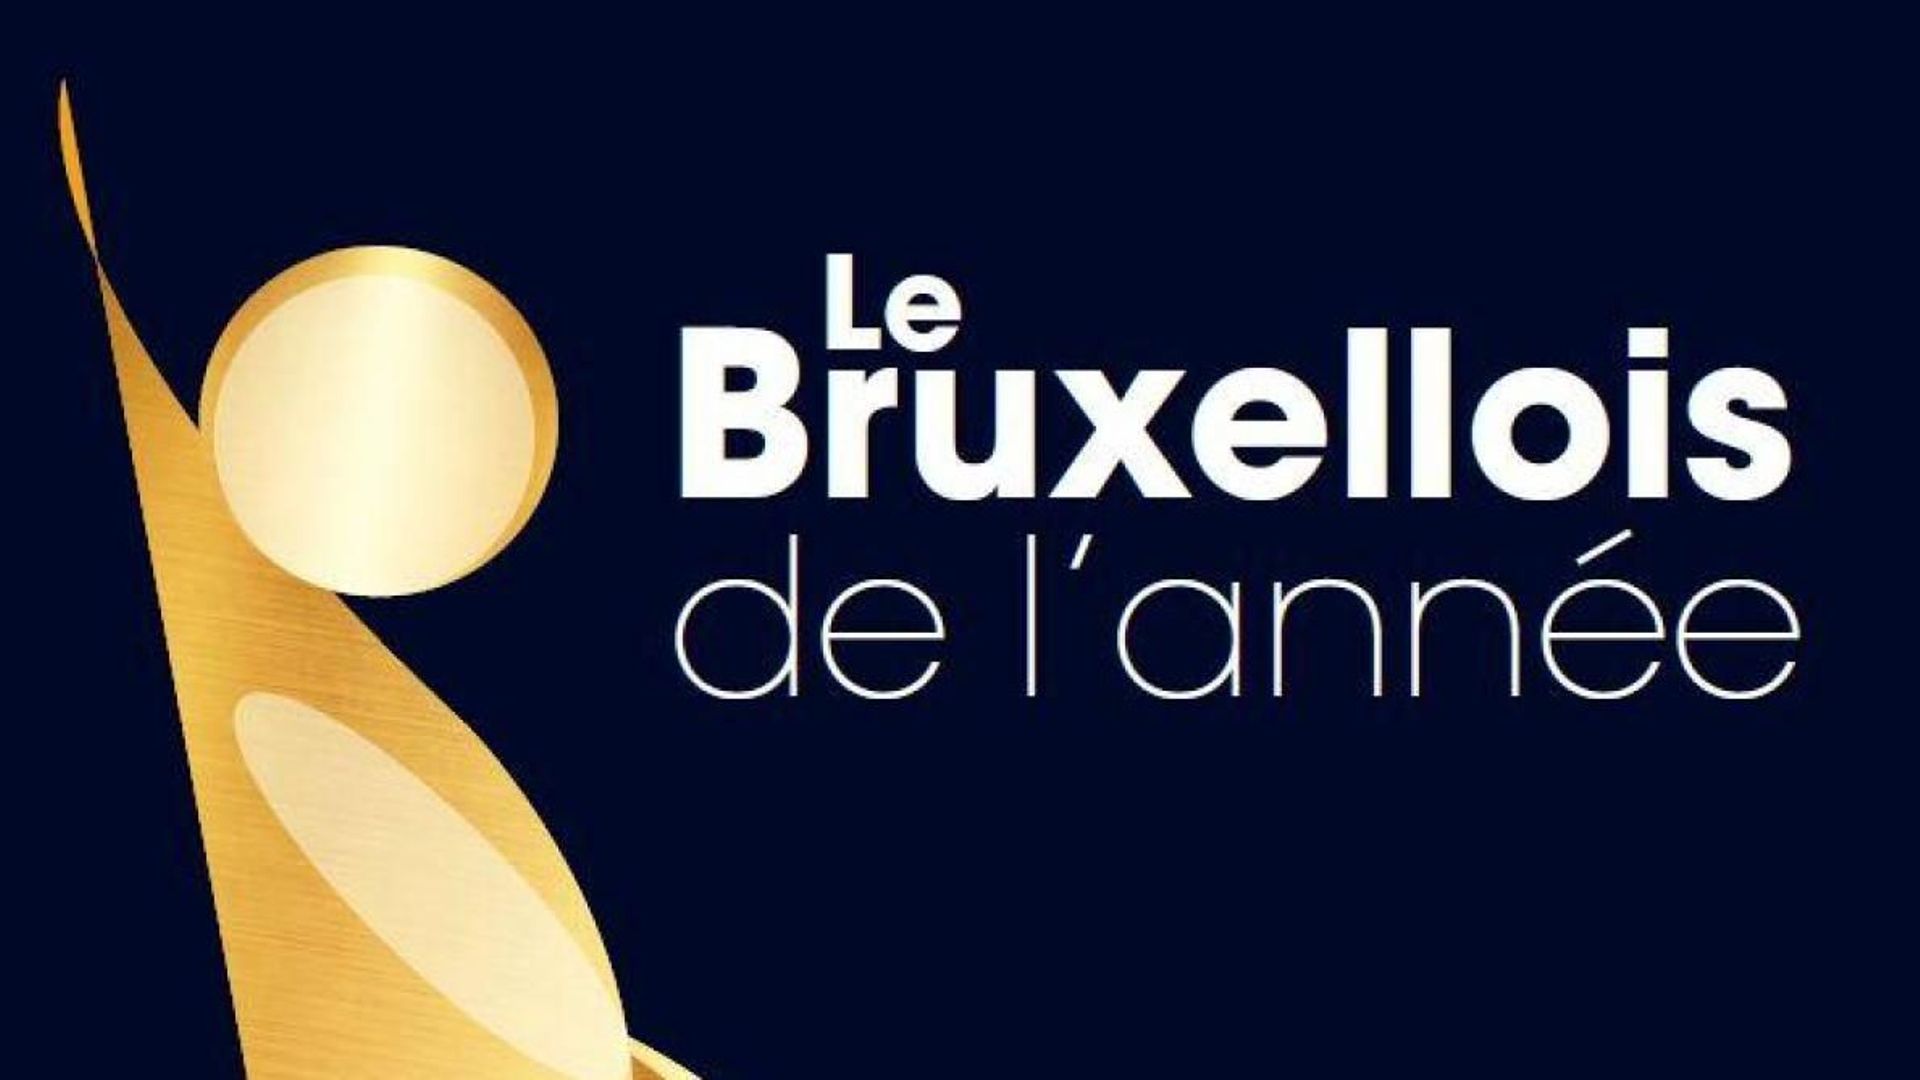 Le Bruxellois de l'année 2018: les votes sont ouverts